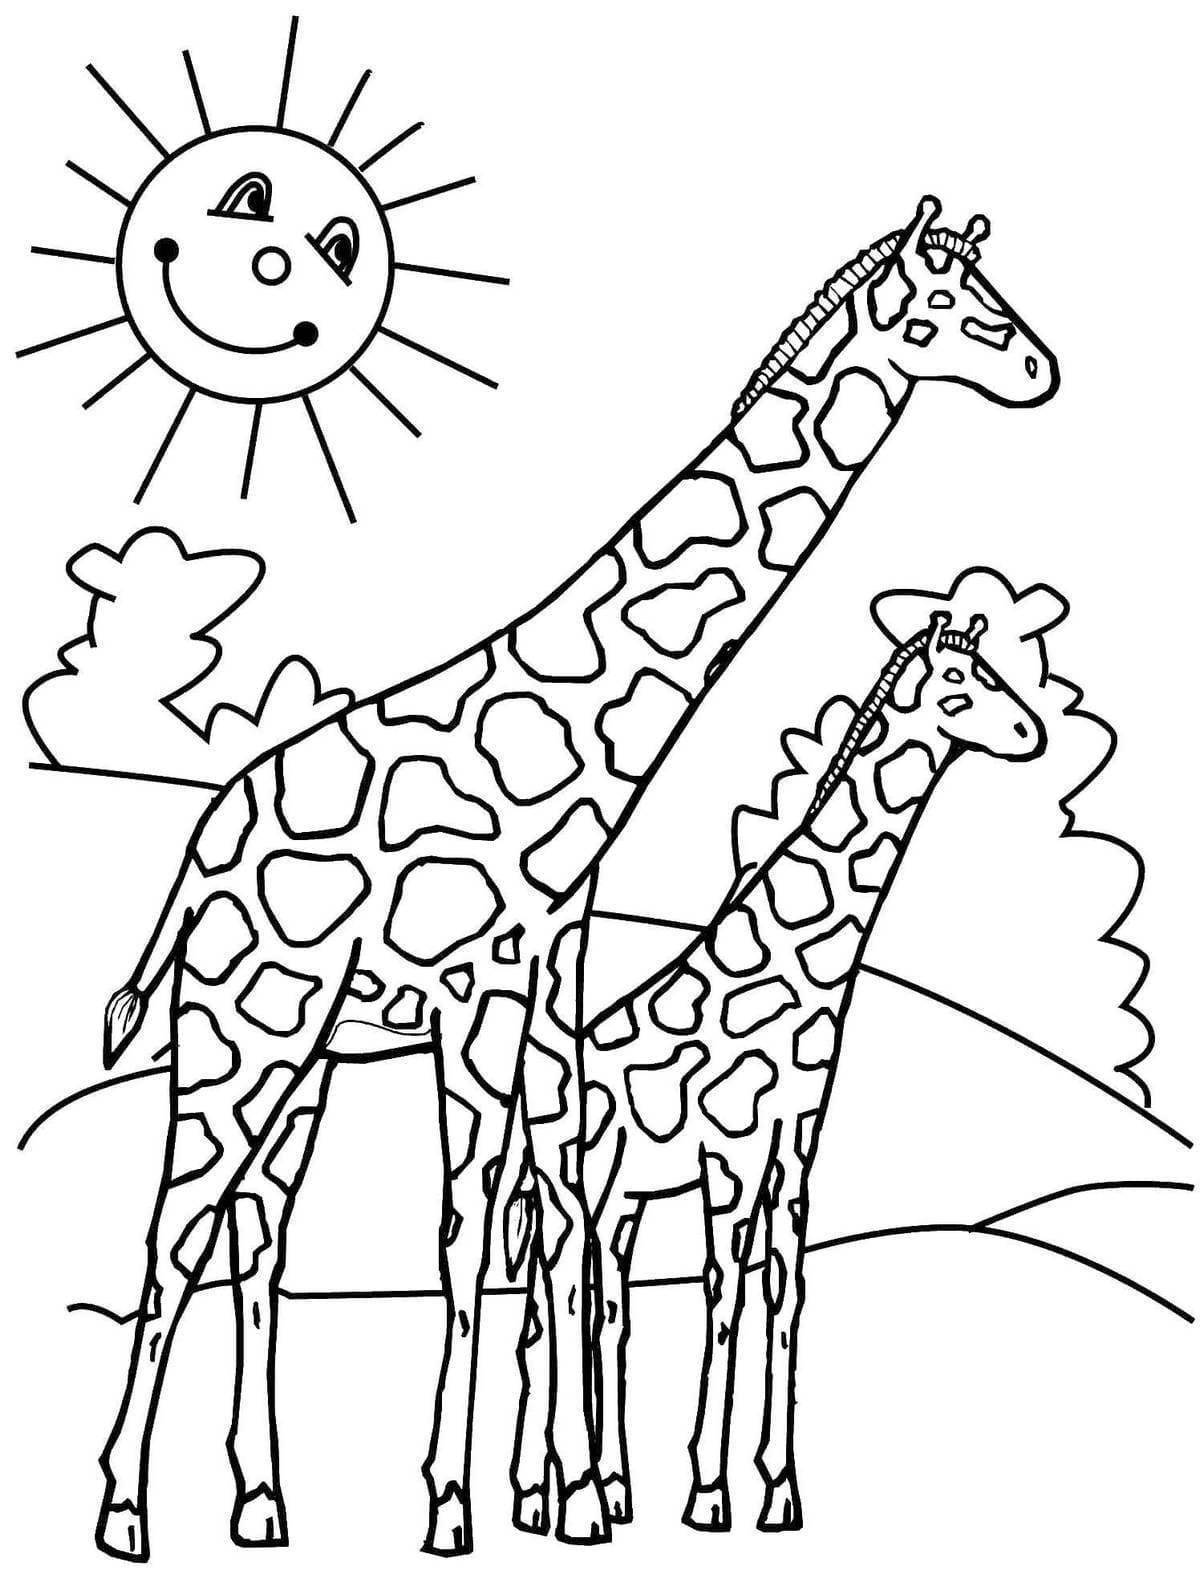 Восхитительная раскраска жирафа для детей 3-4 лет